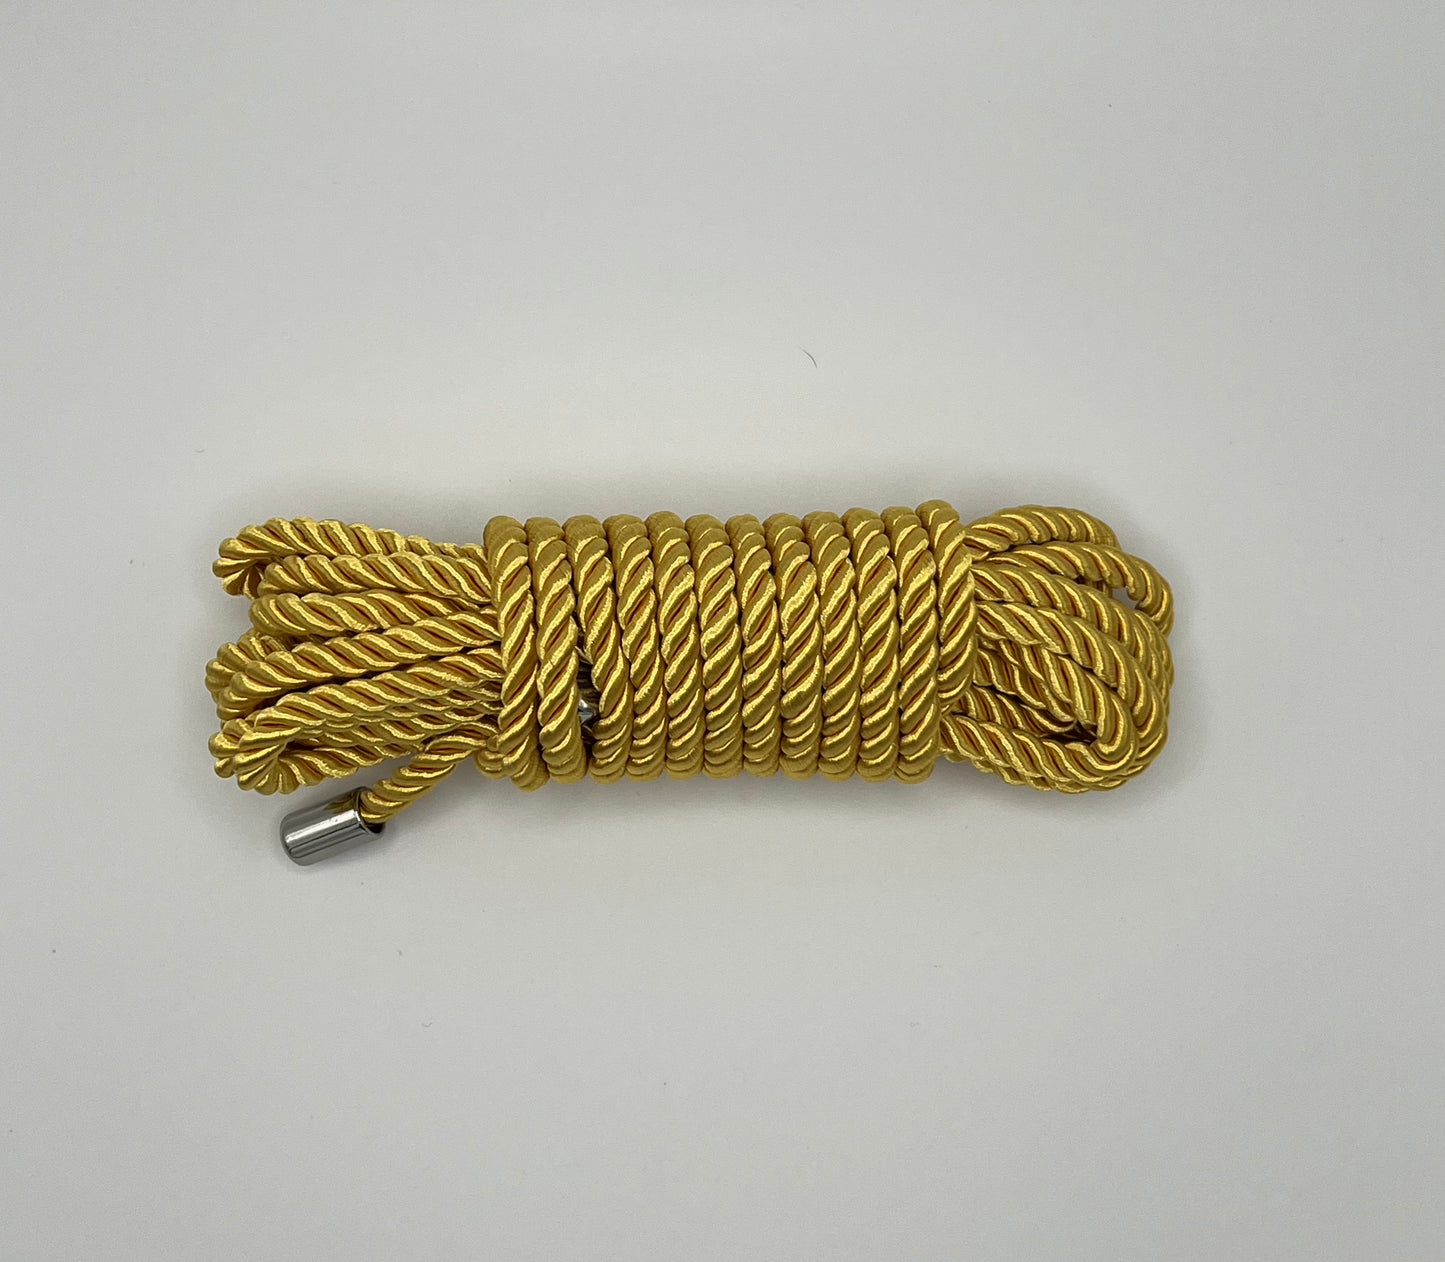 Bondage Rope